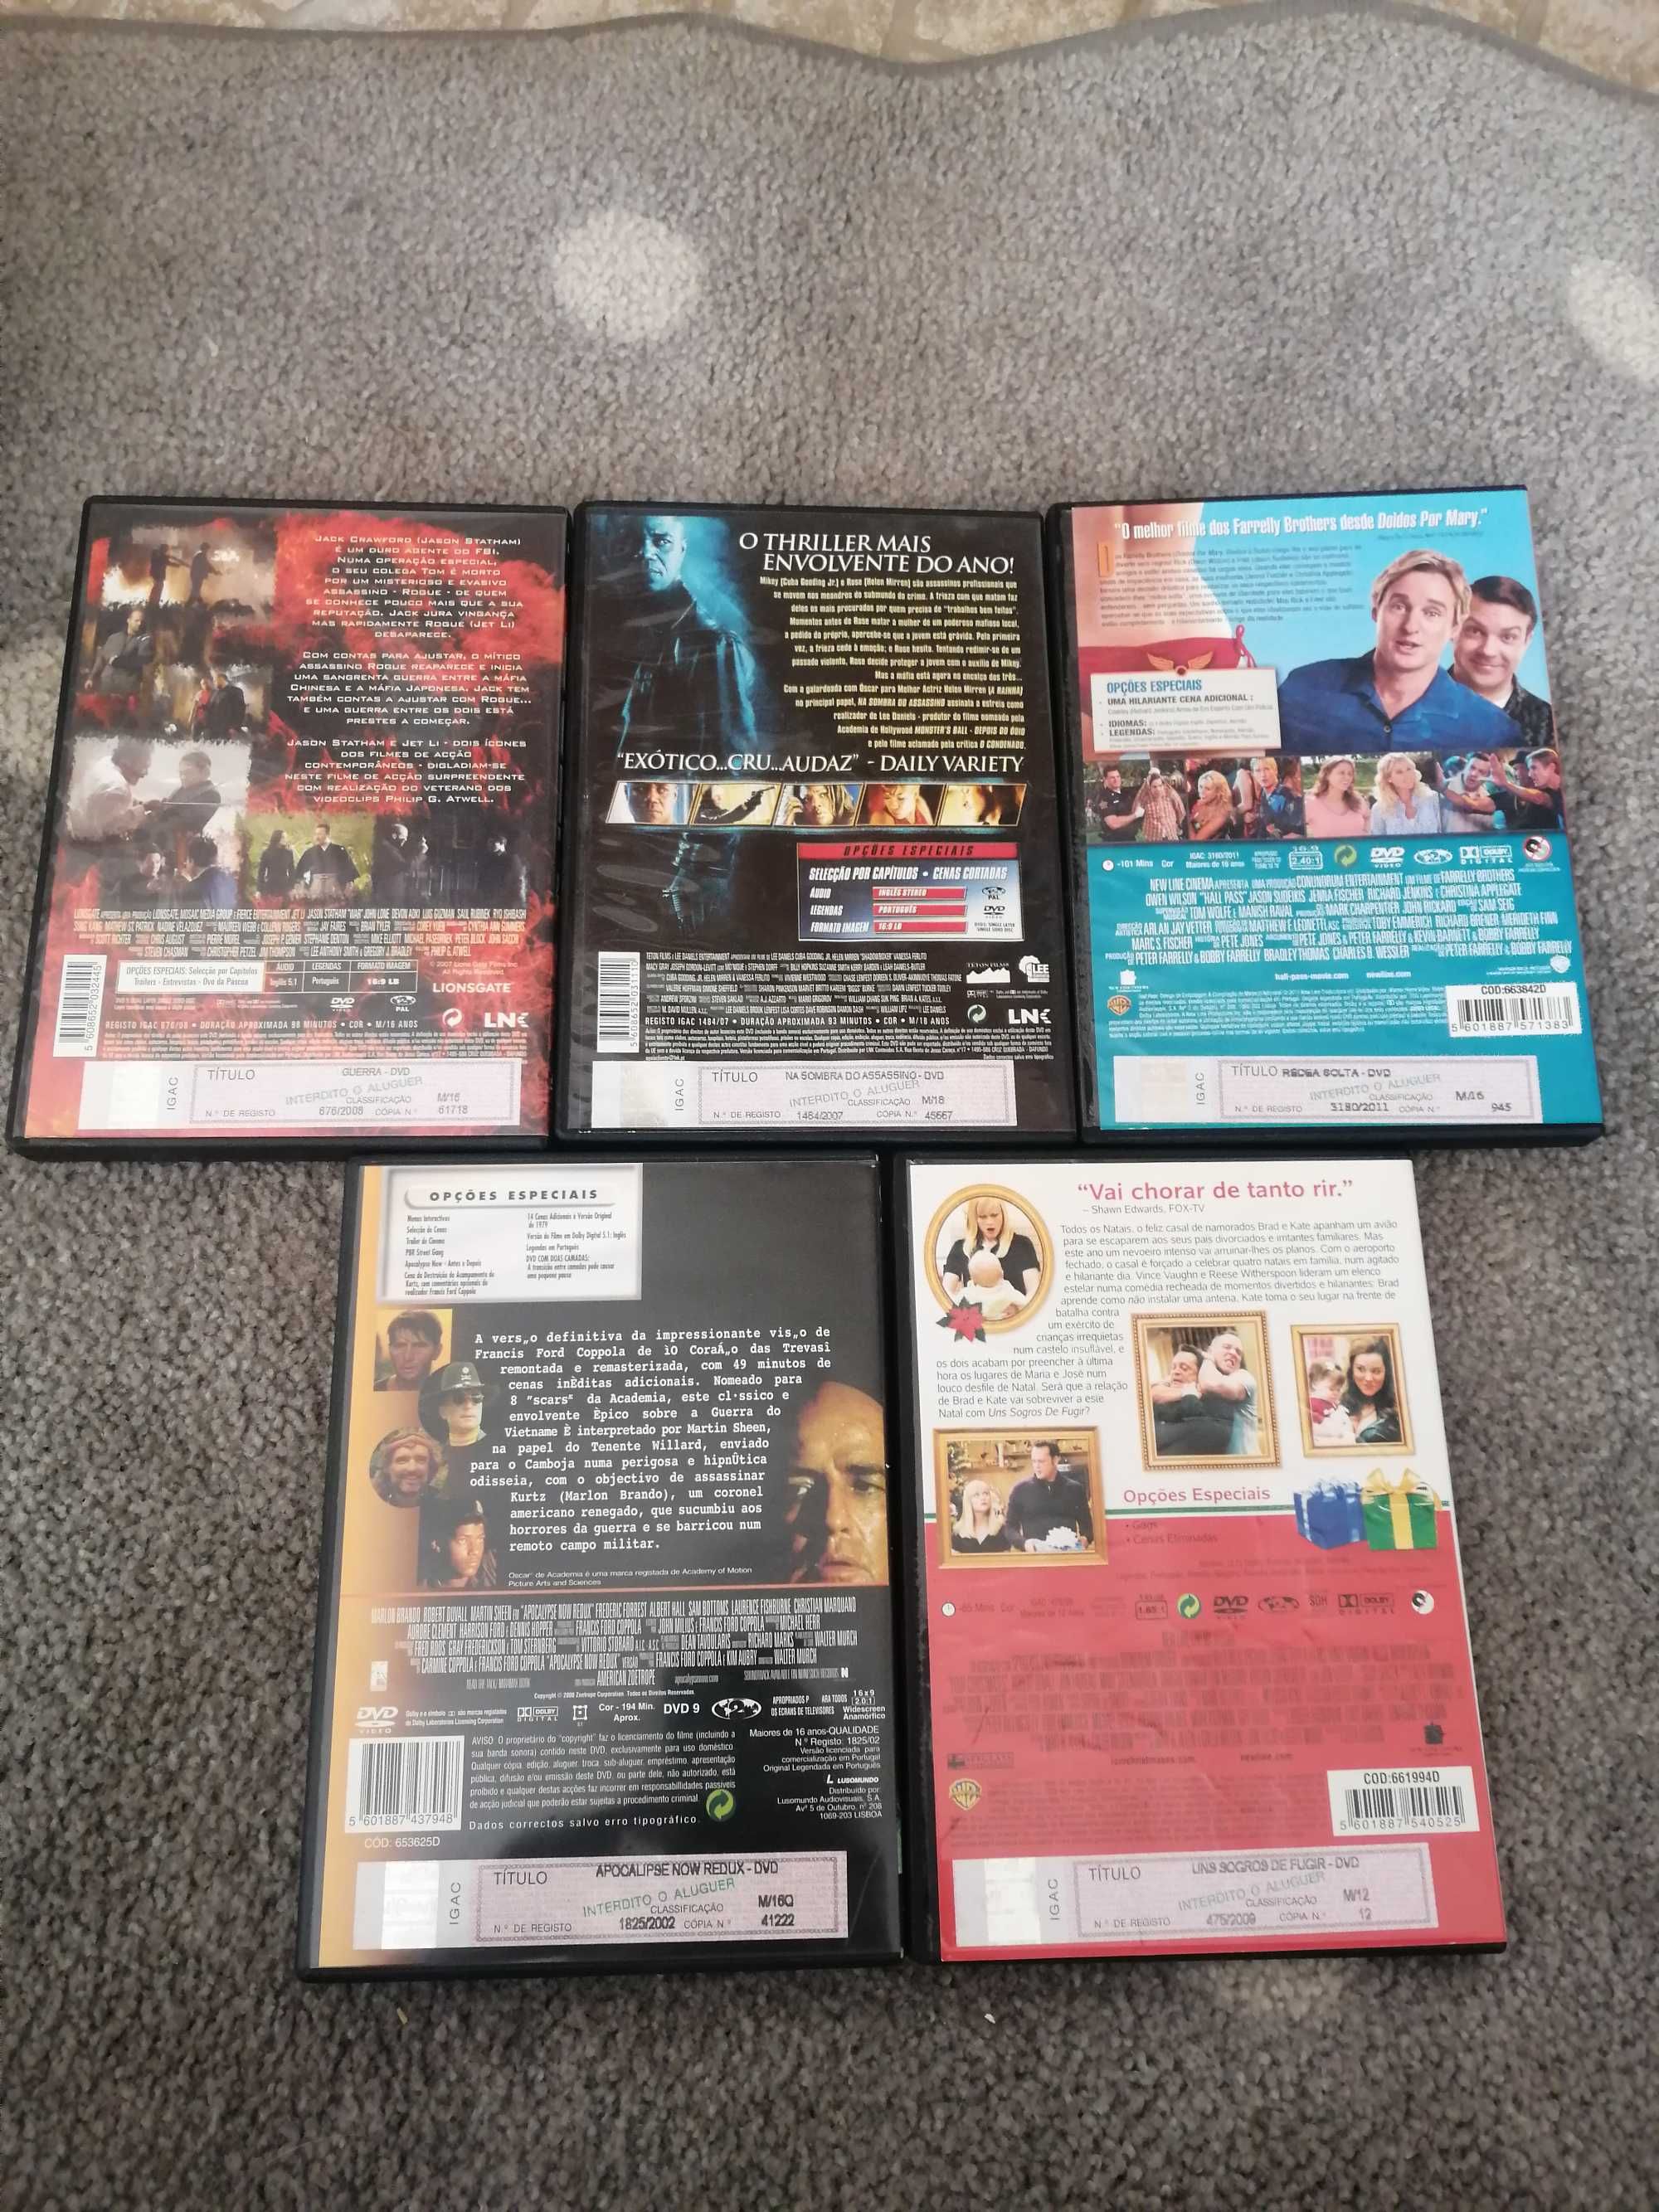 Vários filmes em DVD